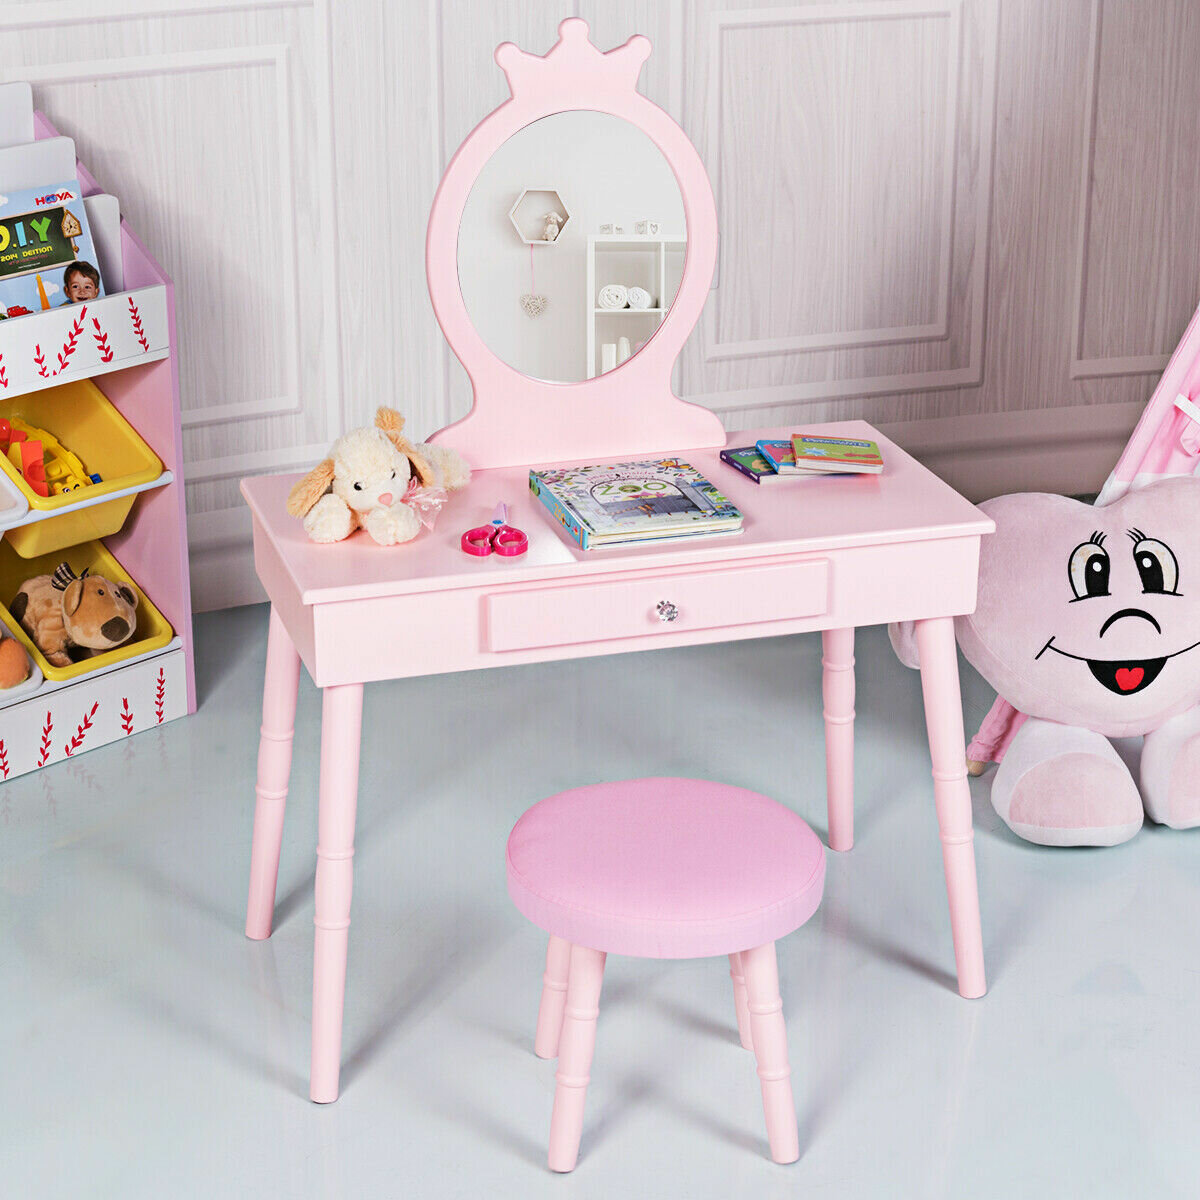 Vanity Set For Girls Little Girl Make Up Table Stool Mirror Light Kids Play Toy 